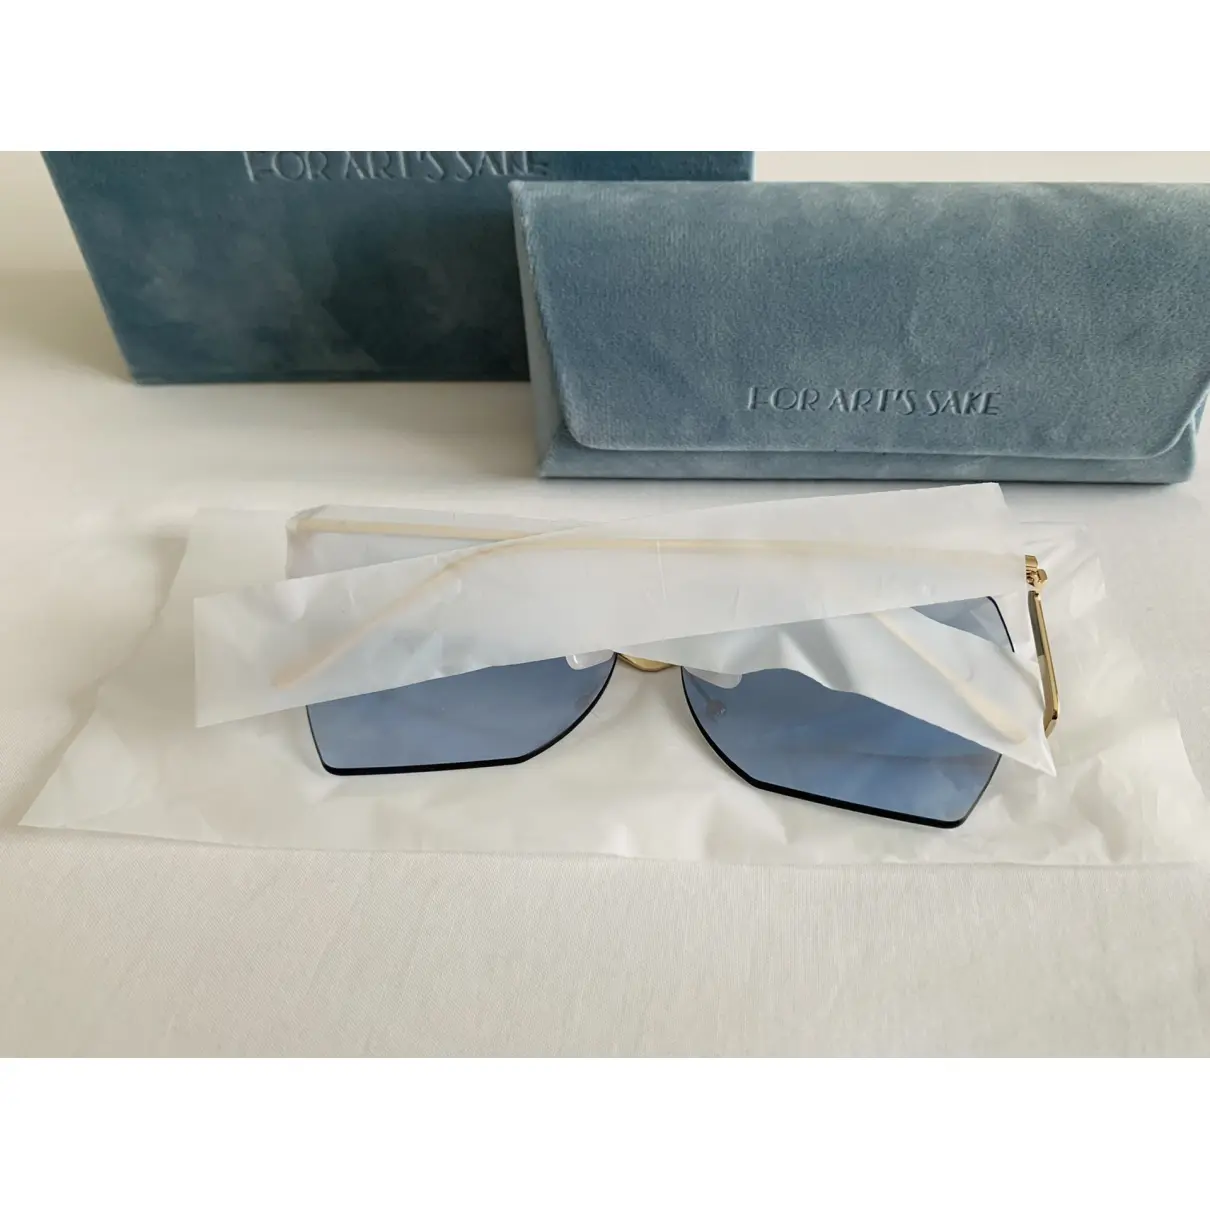 Buy FOR ART’S SAKE Oversized sunglasses online